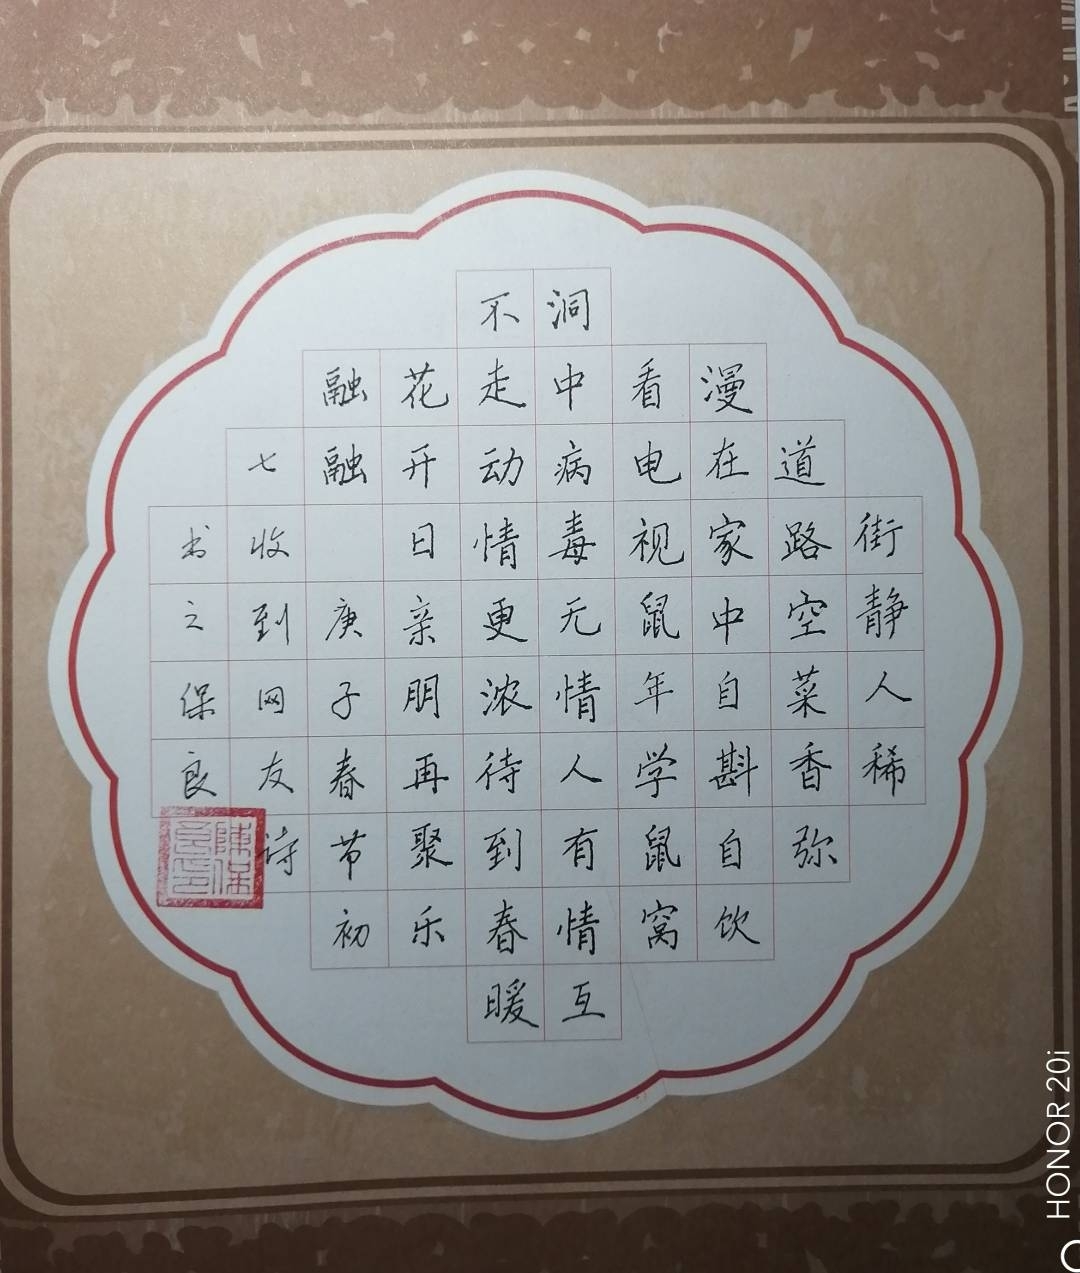 陈保良先生的硬笔书法作品《春节》.